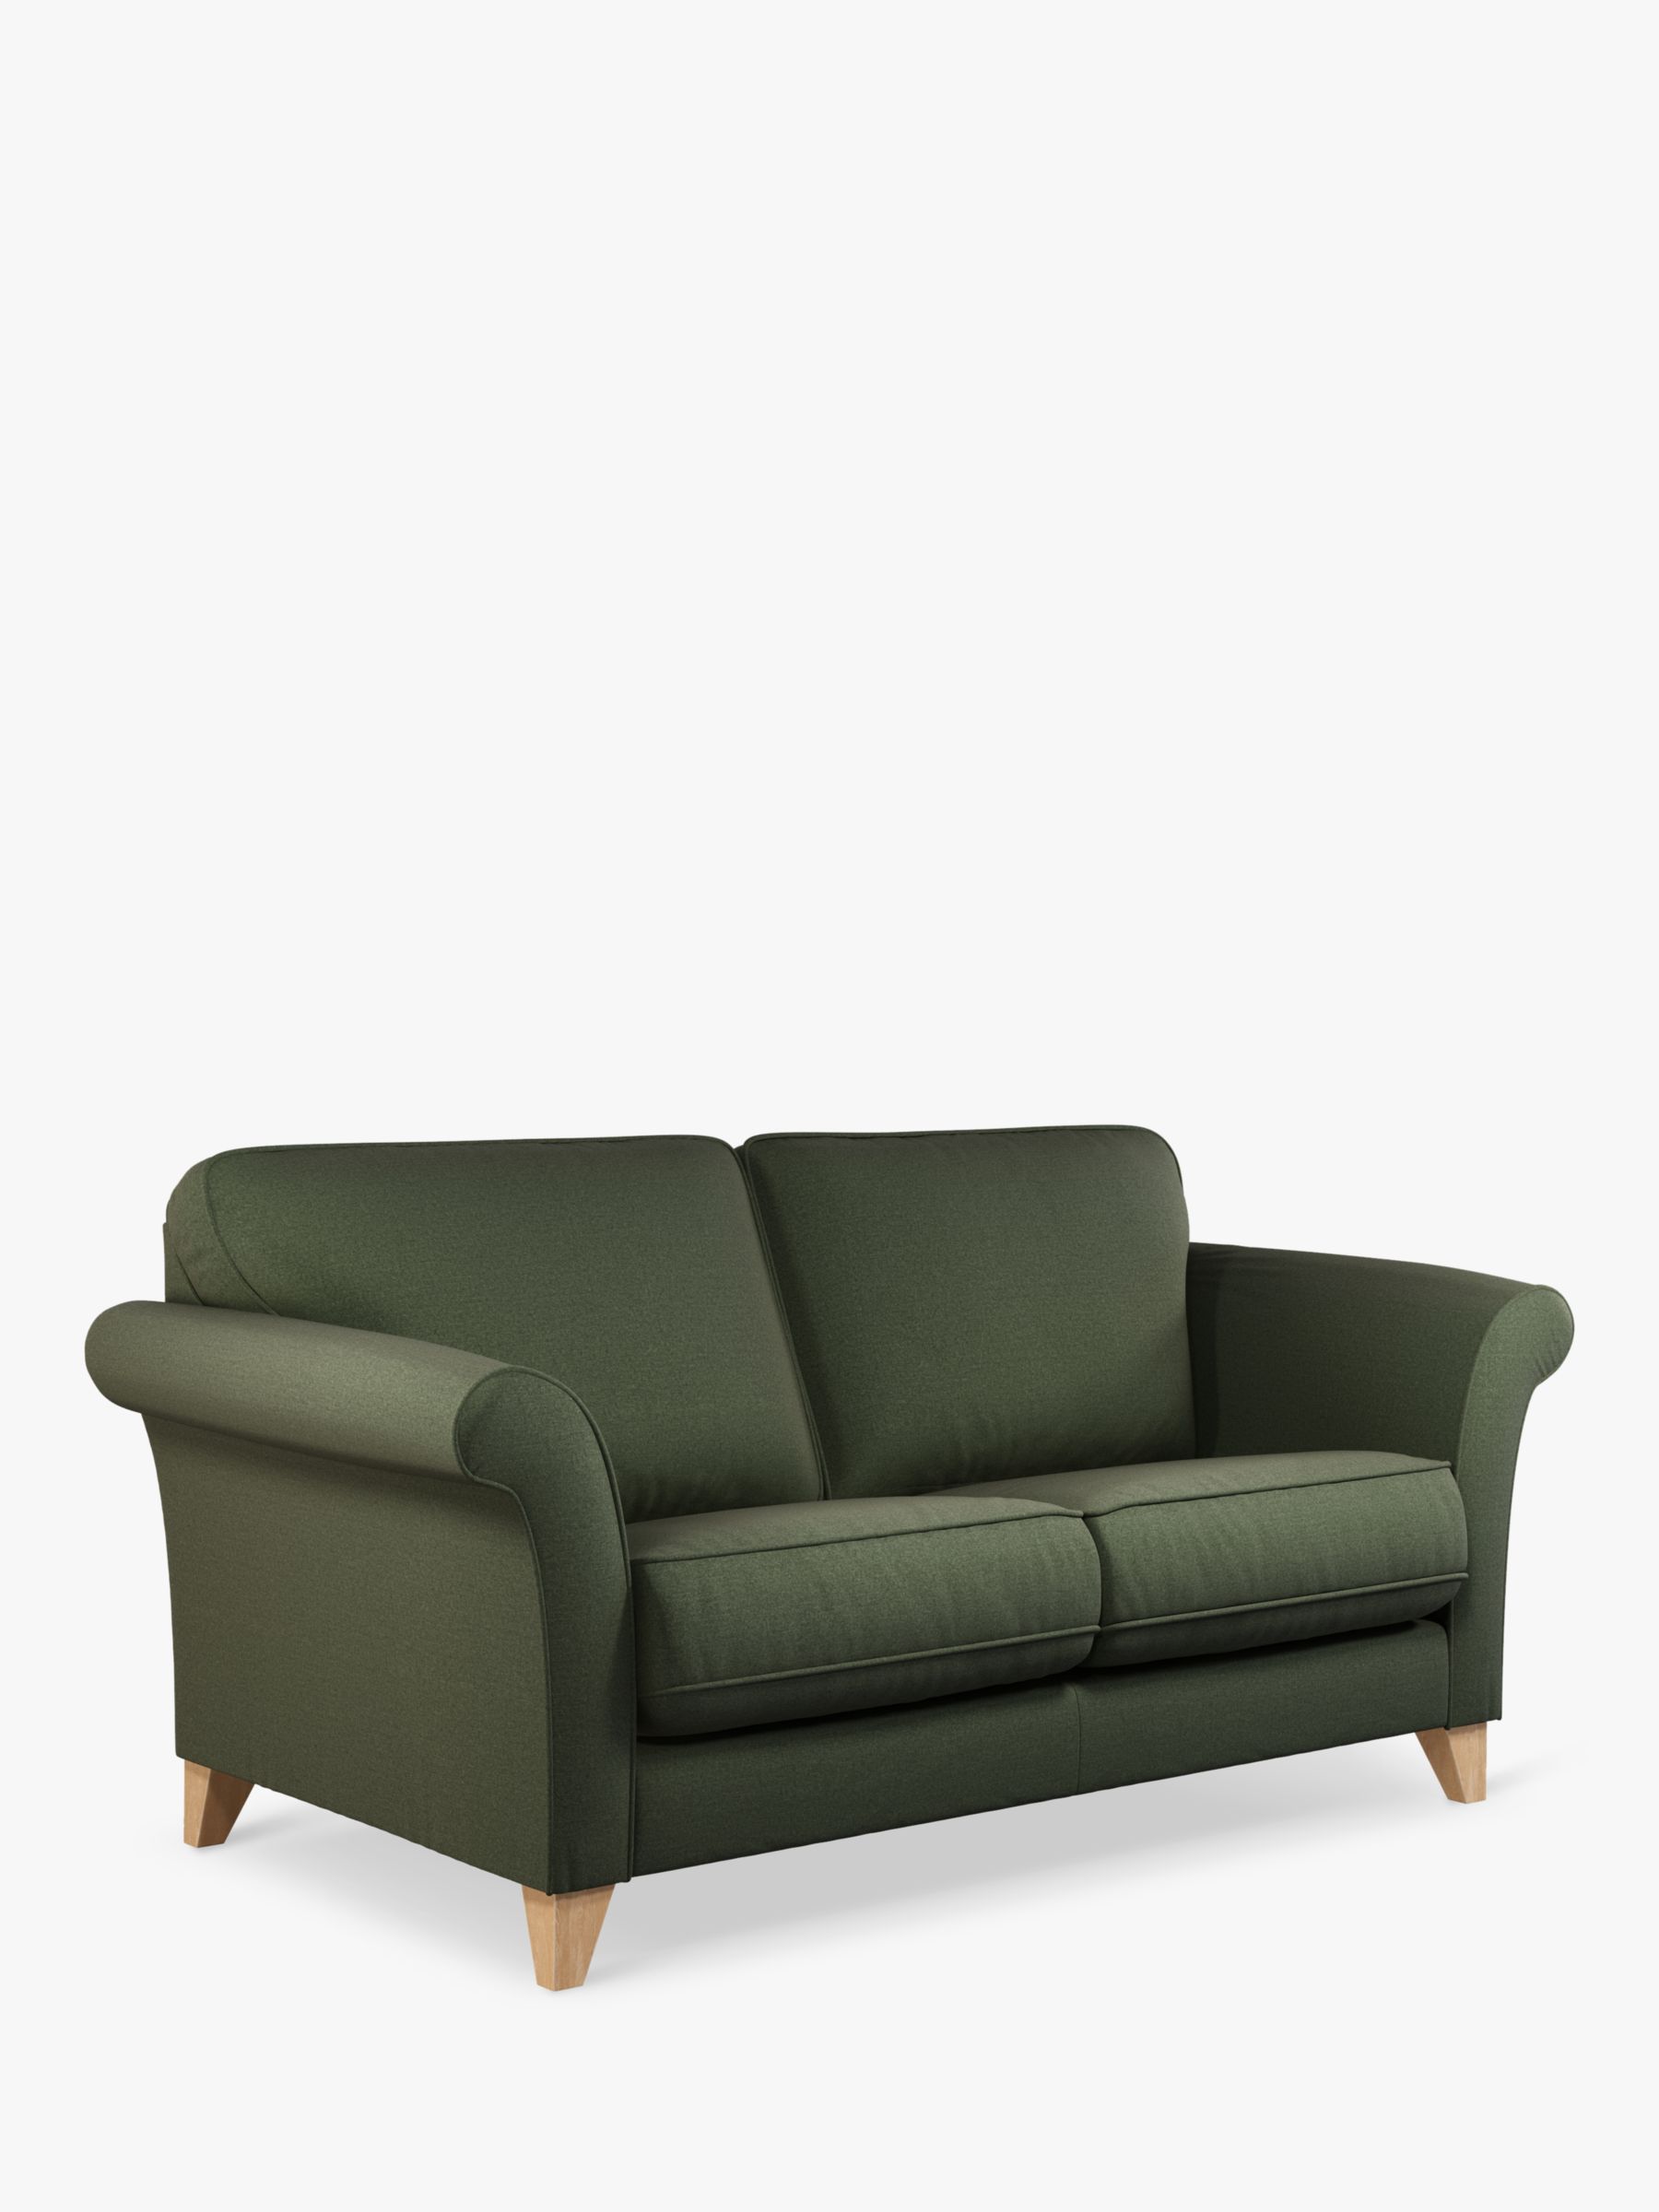 Charlotte Range, John Lewis Charlotte Large 3 Seater Sofa, Light Leg, Brushed Tweed Green